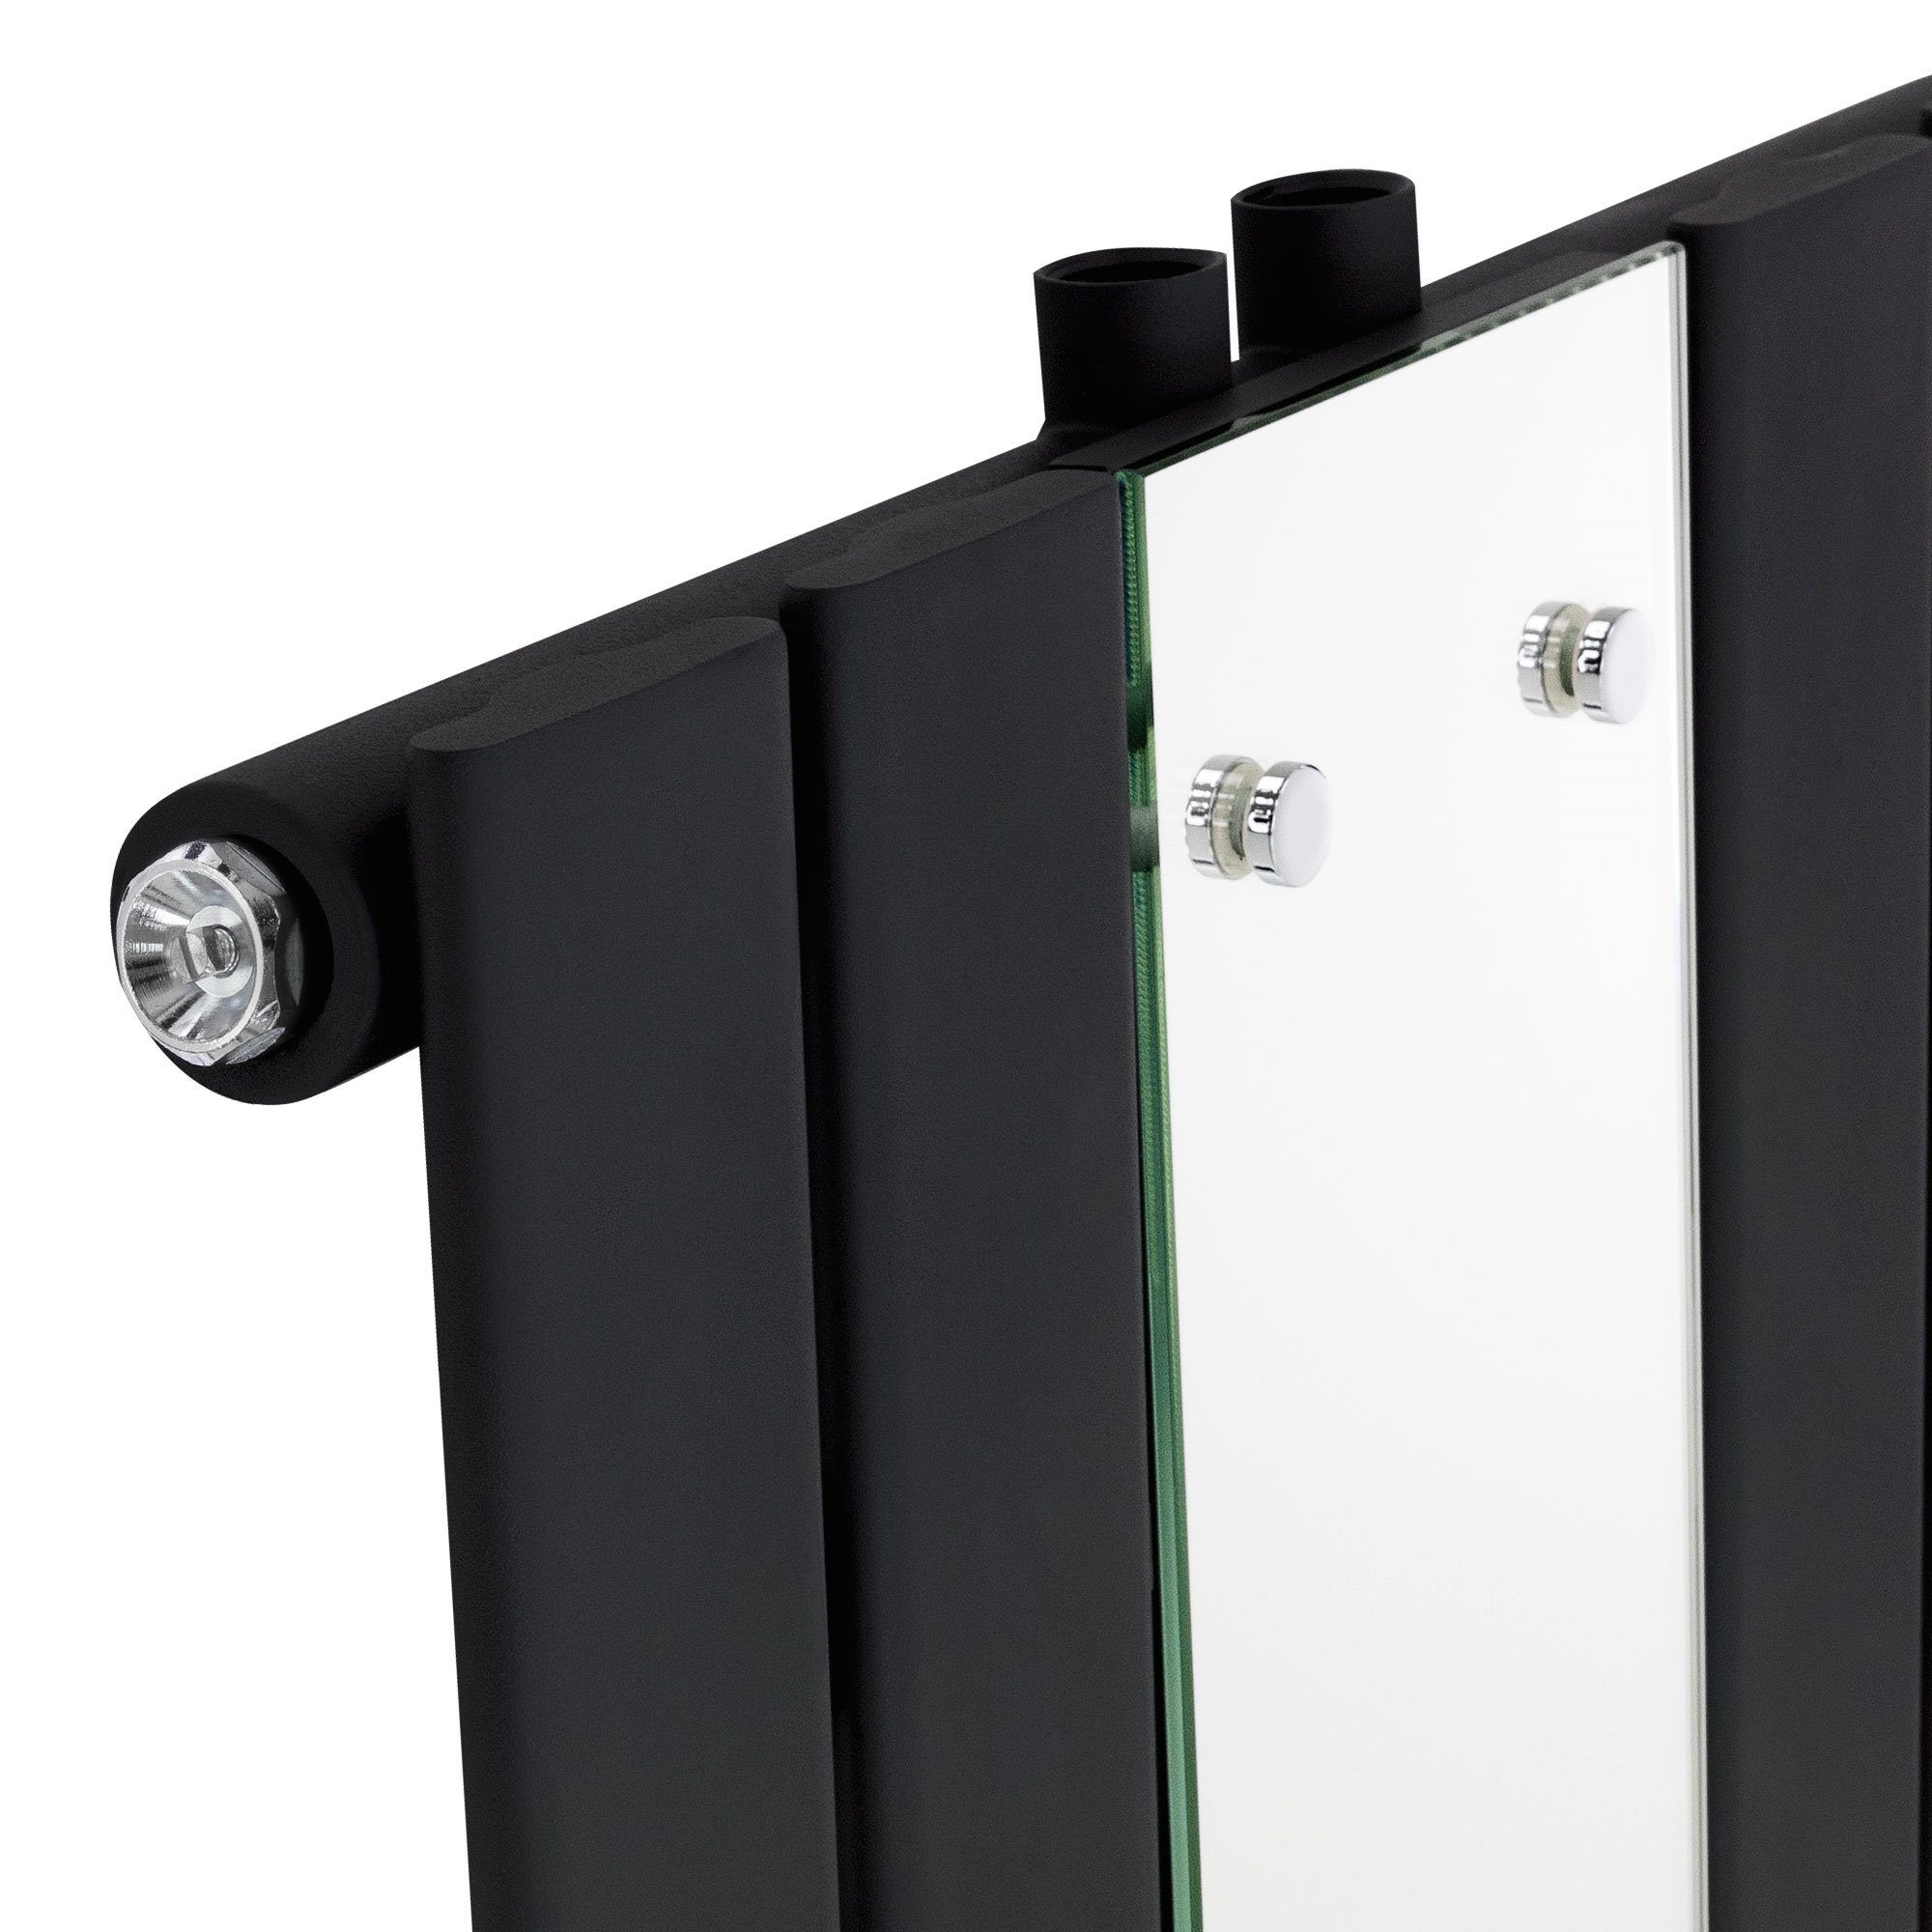 Schwarz Heizkörper Badheizkörper Paneelheizkörper matt Glasheizkörper, mit Mittelanschluss 1200x450mm Montage-Set Spiegelheizkörper LuxeBath Spiegel